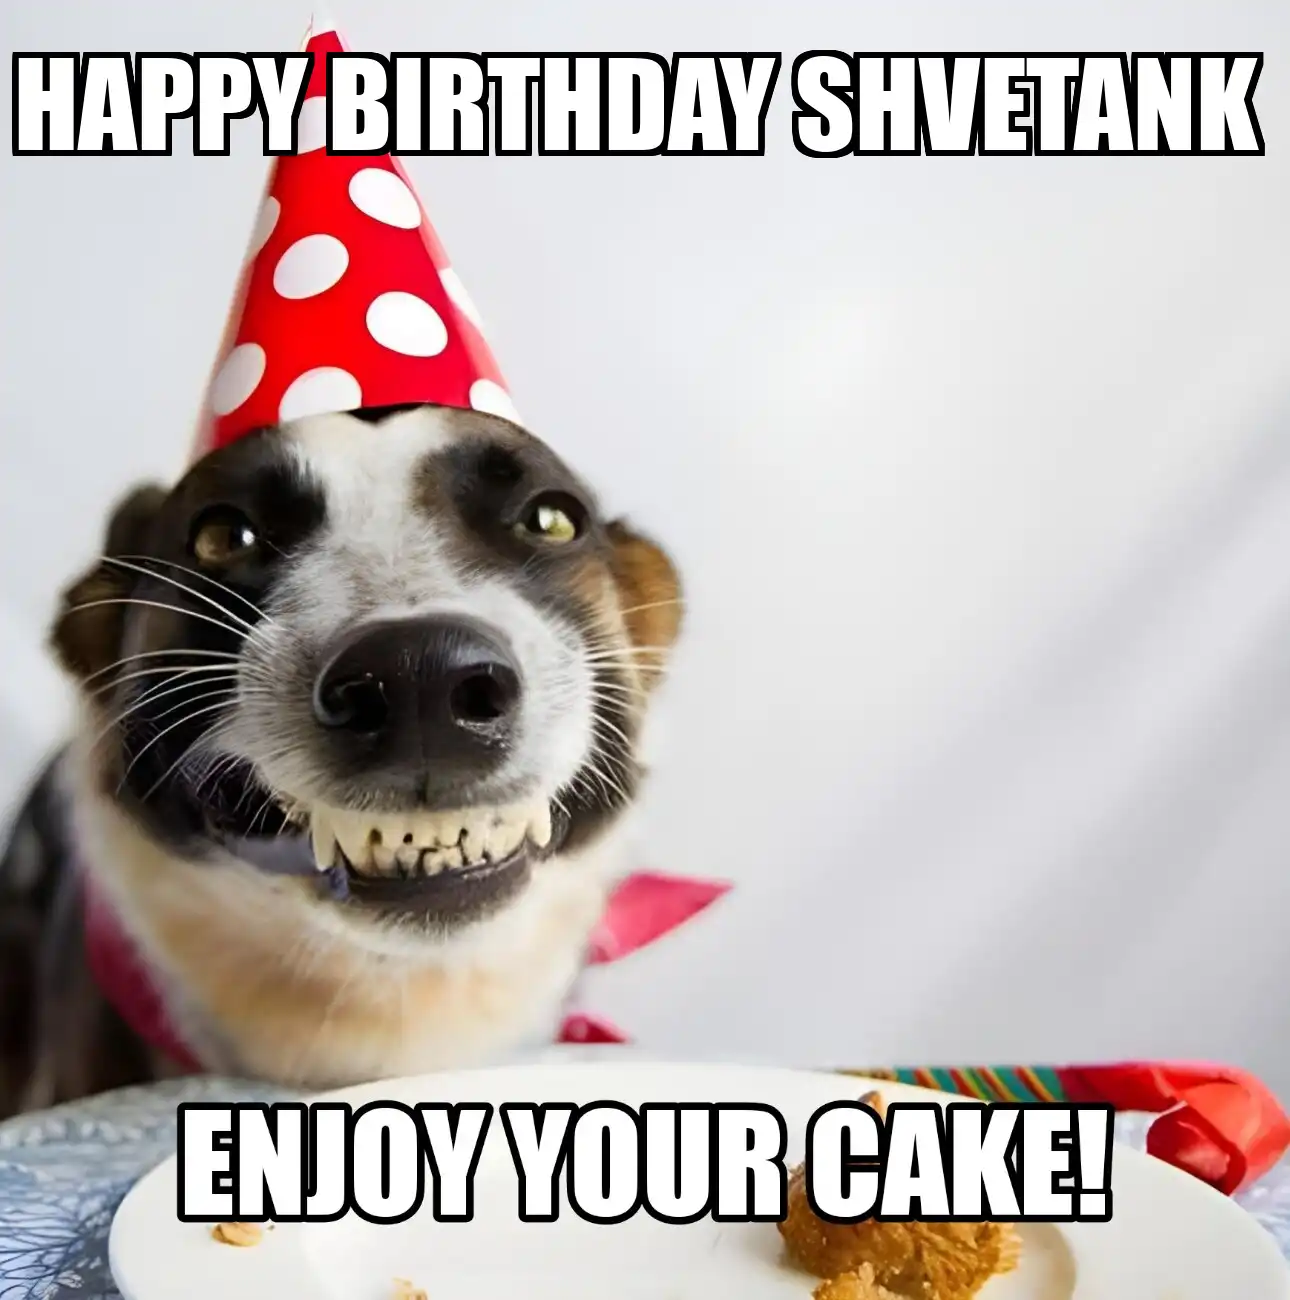 Happy Birthday Shvetank Enjoy Your Cake Dog Meme